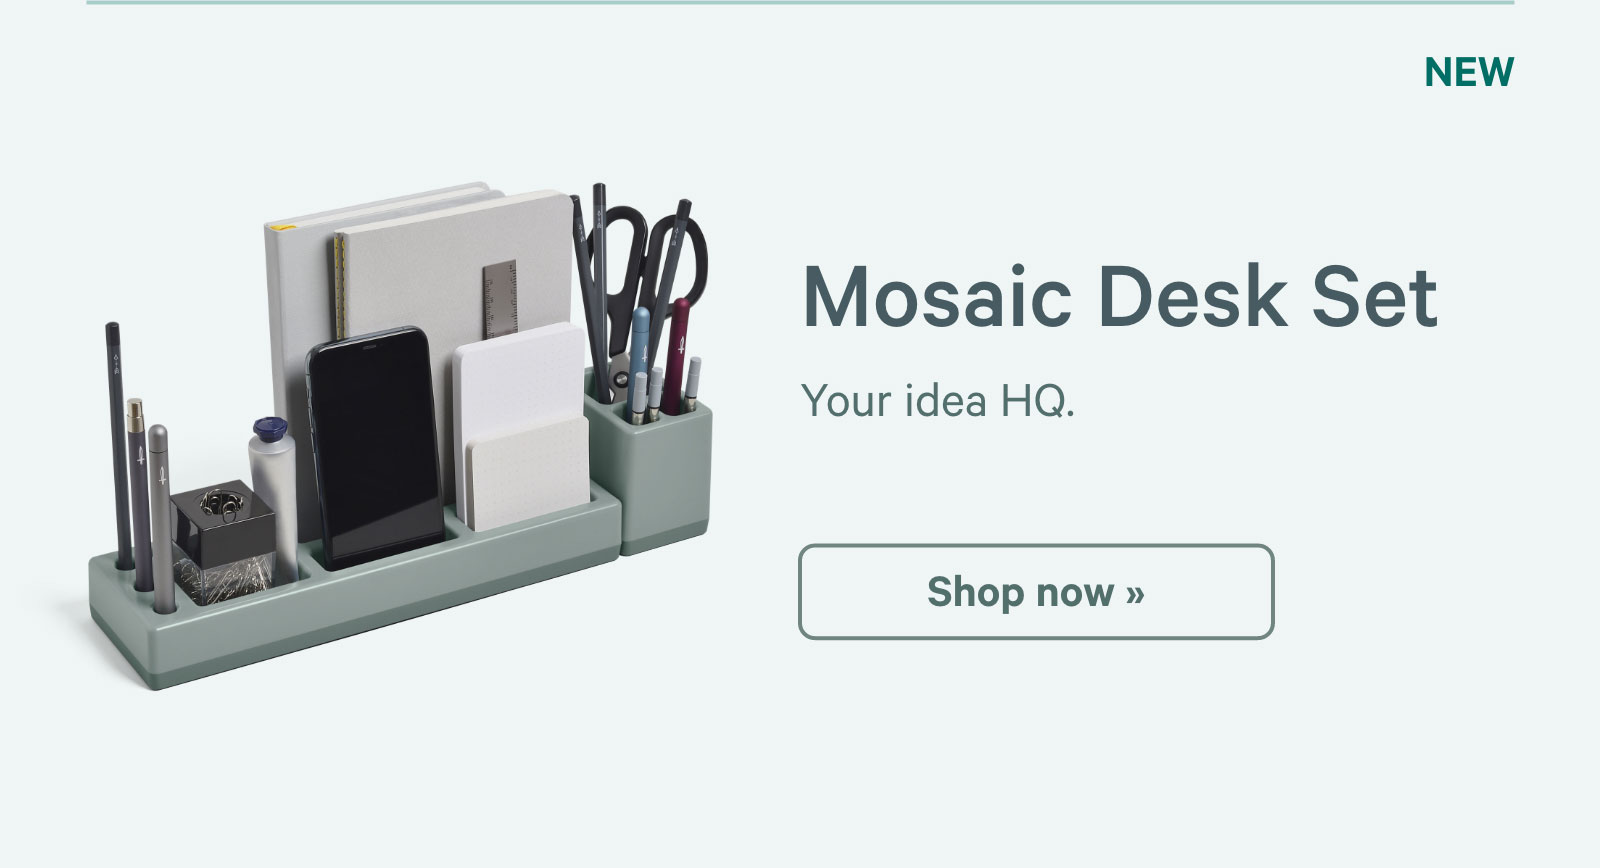 Mosaic Desk Set. Your idea HQ. Shop now ?